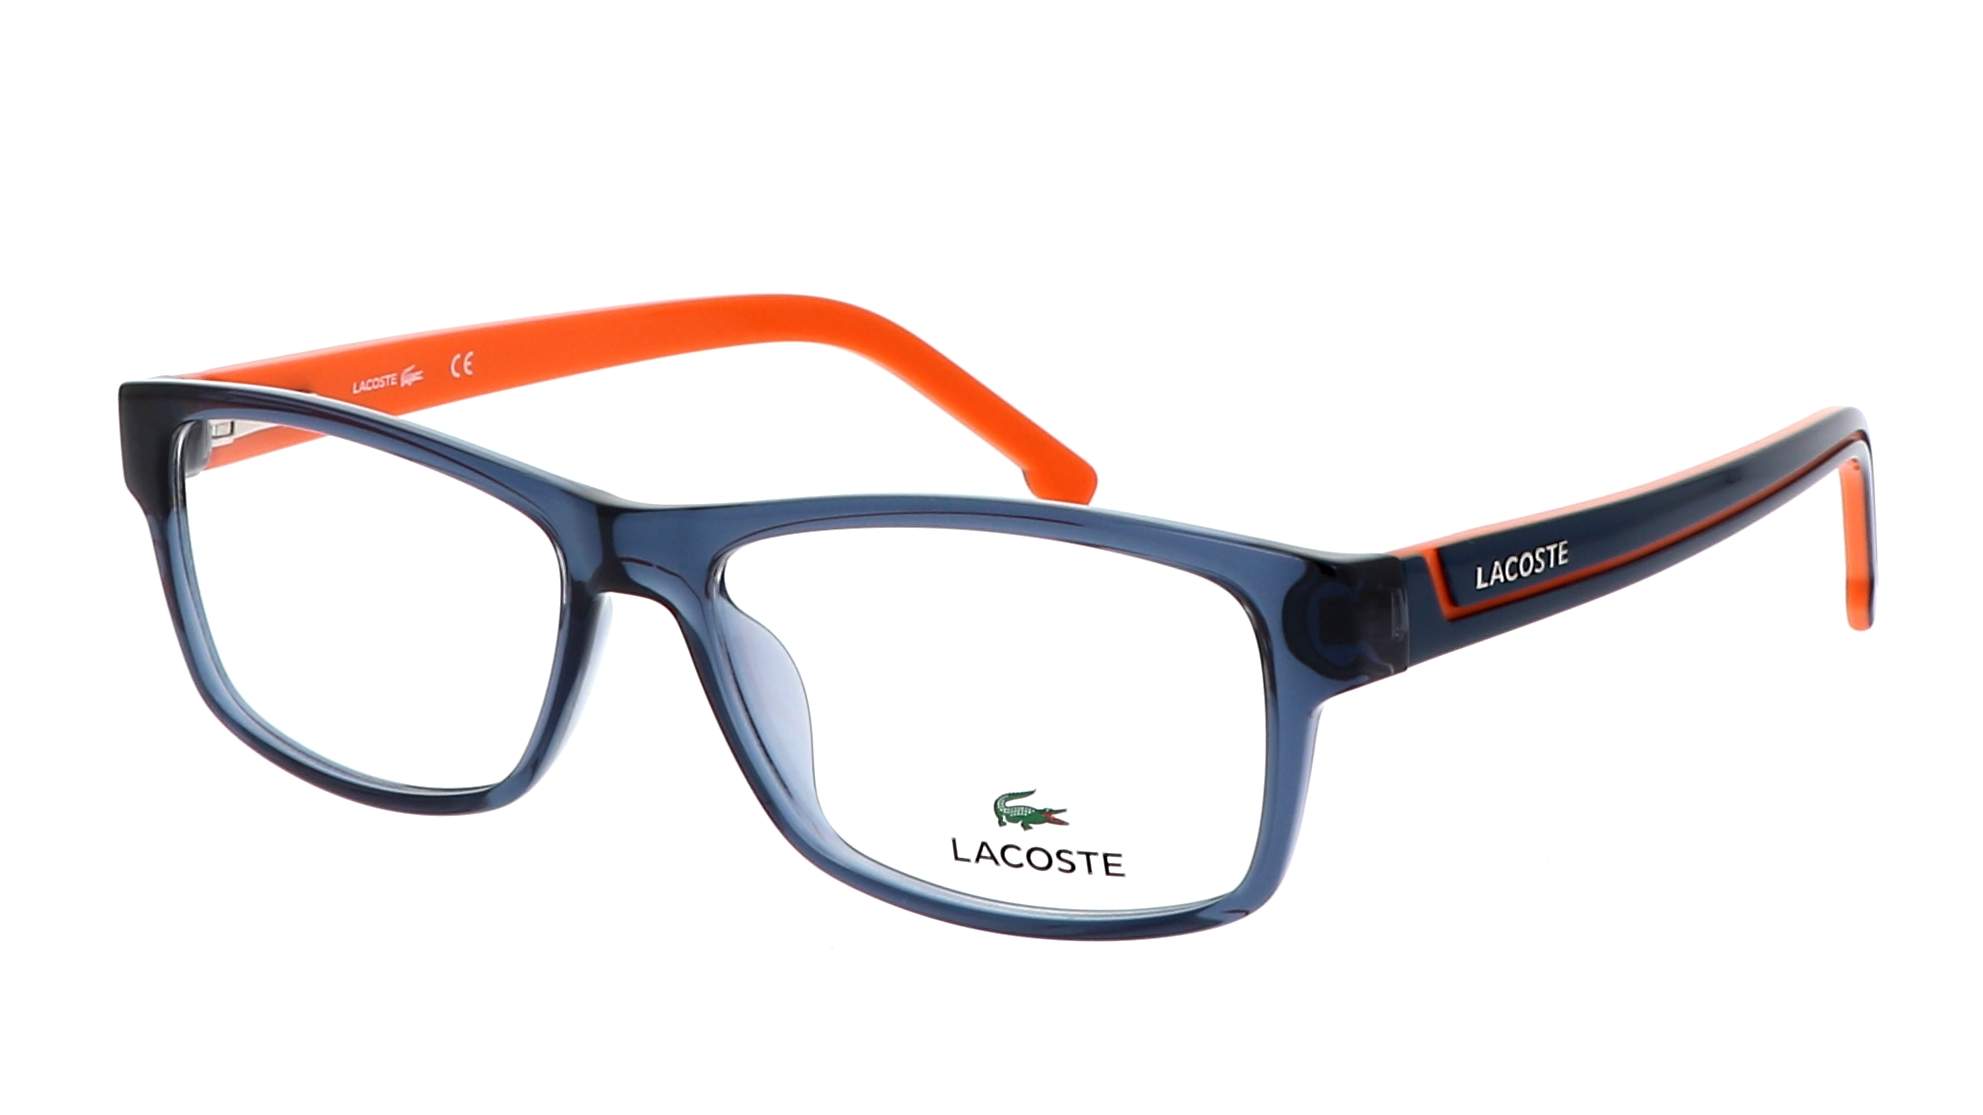 Lacoste l003 neo. L2819 315 52 18 145 очки Lacoste. Лакост очки l962. Очки Lacoste l715. Очки Lacoste 900s 001.